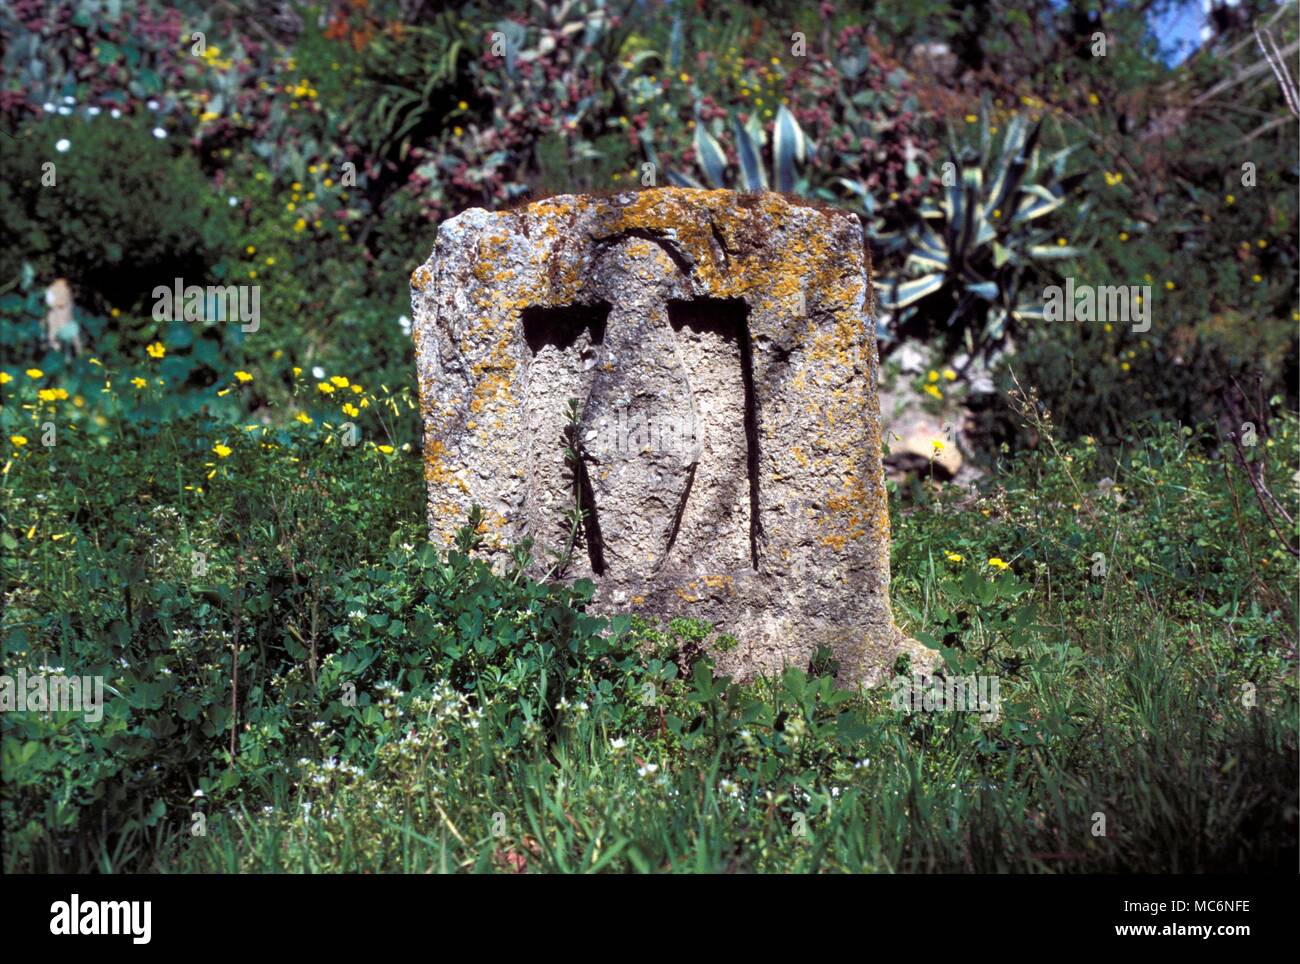 Tunesien Tophet Gräber und Denkmäler in der TOPHET in der Nähe von Carthage (moderne Tunis), in dem die Grabstätten der alten geschichtsträchtigen Sehenswürdigkeiten Göttern geopfert zusammen mit einem Wasser gebunden Hypogeum beibehalten wird Stockfoto